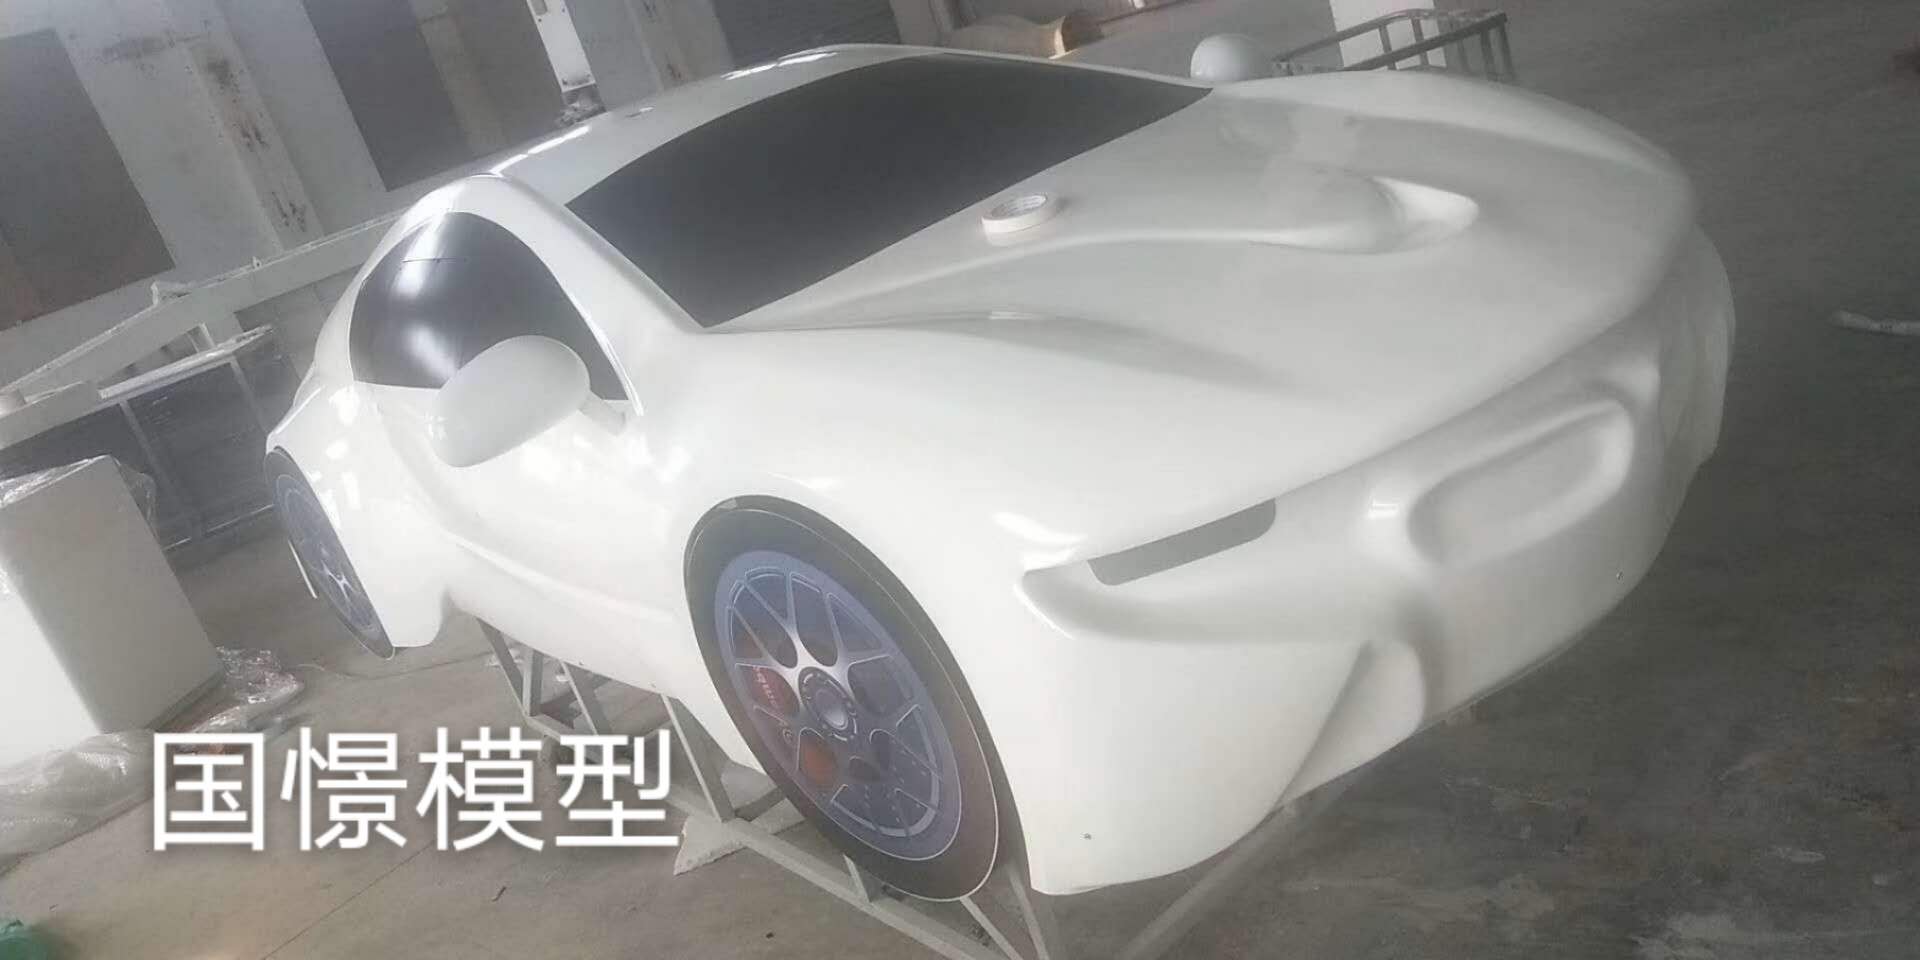 双峰县车辆模型